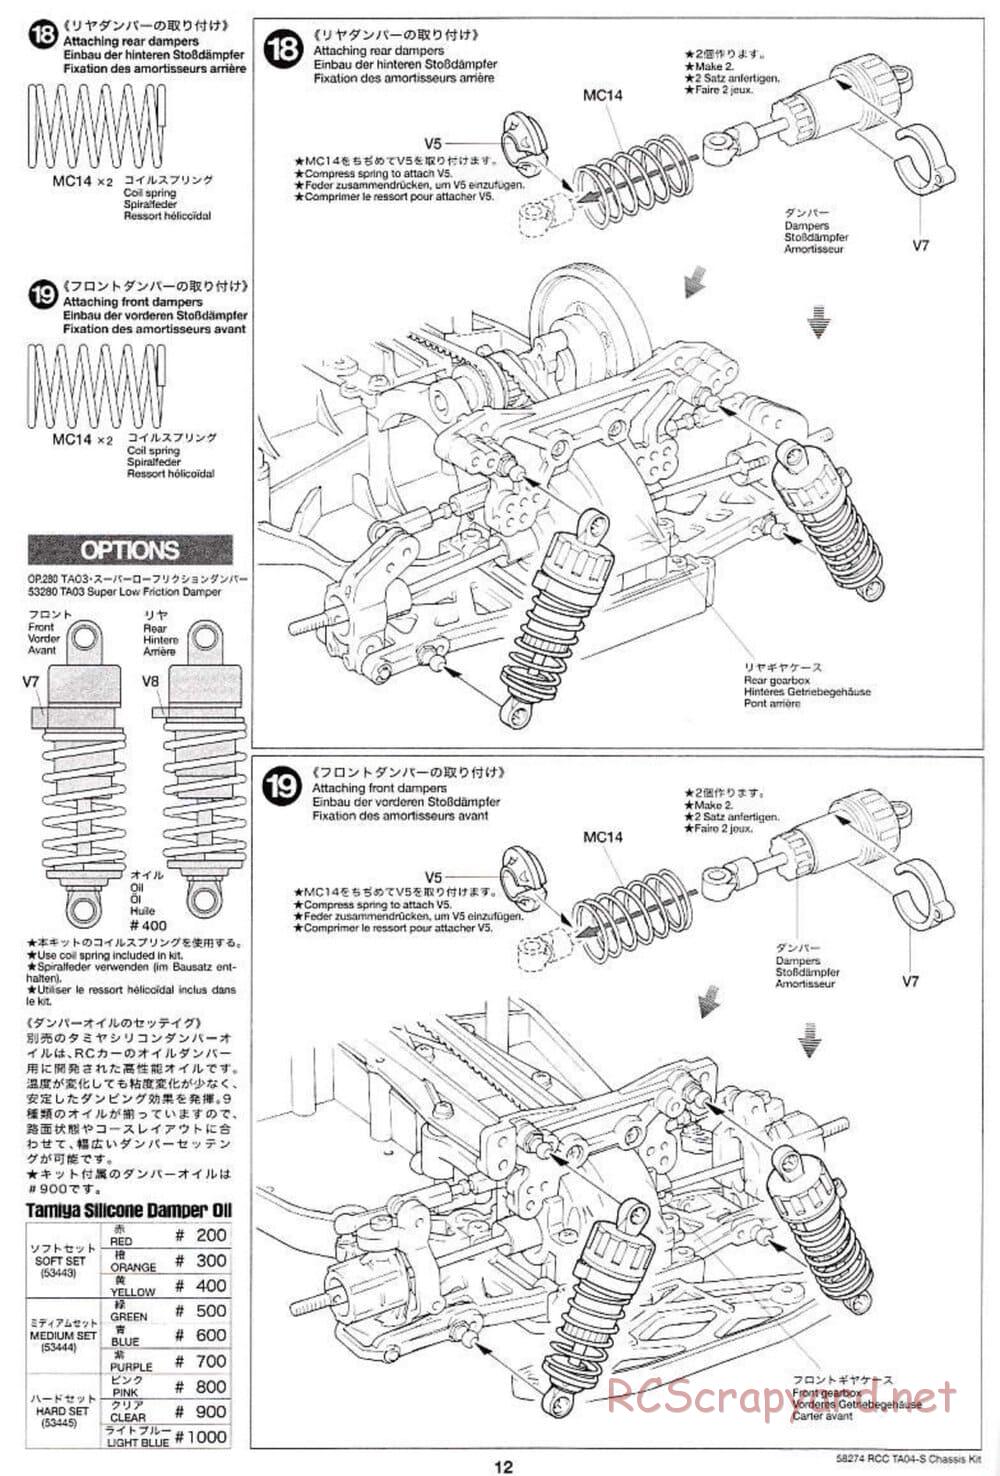 Tamiya - TA-04S Chassis - Manual - Page 12